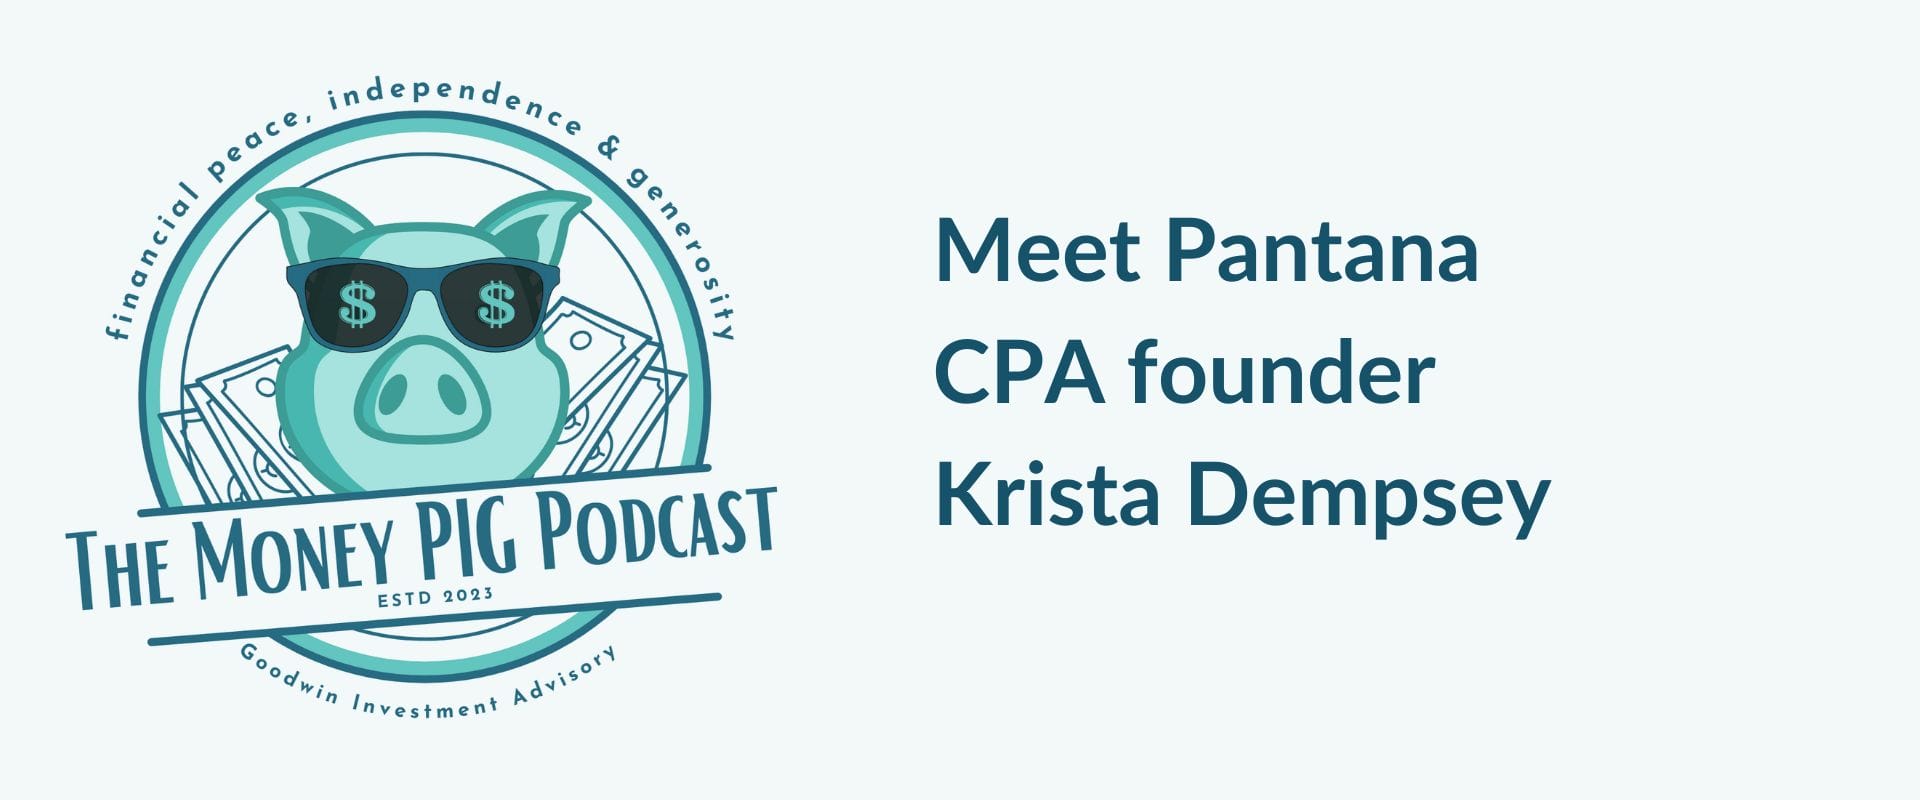 Meet Pantana CPA founder Krista Dempsey